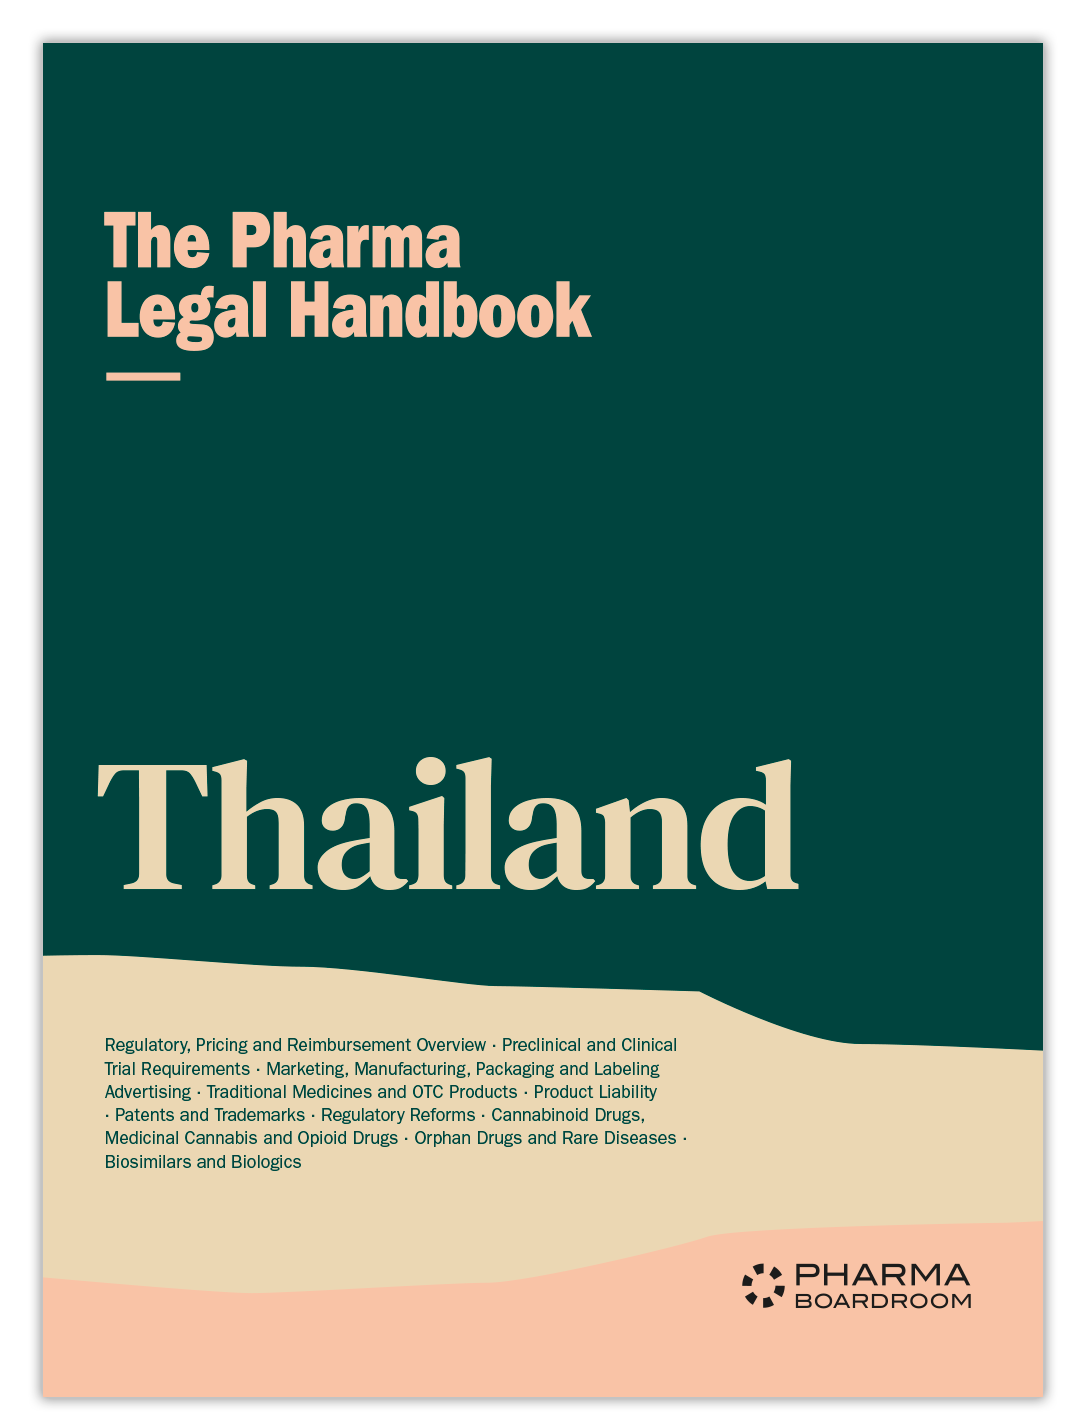 The Pharma Legal Handbook: Thailand